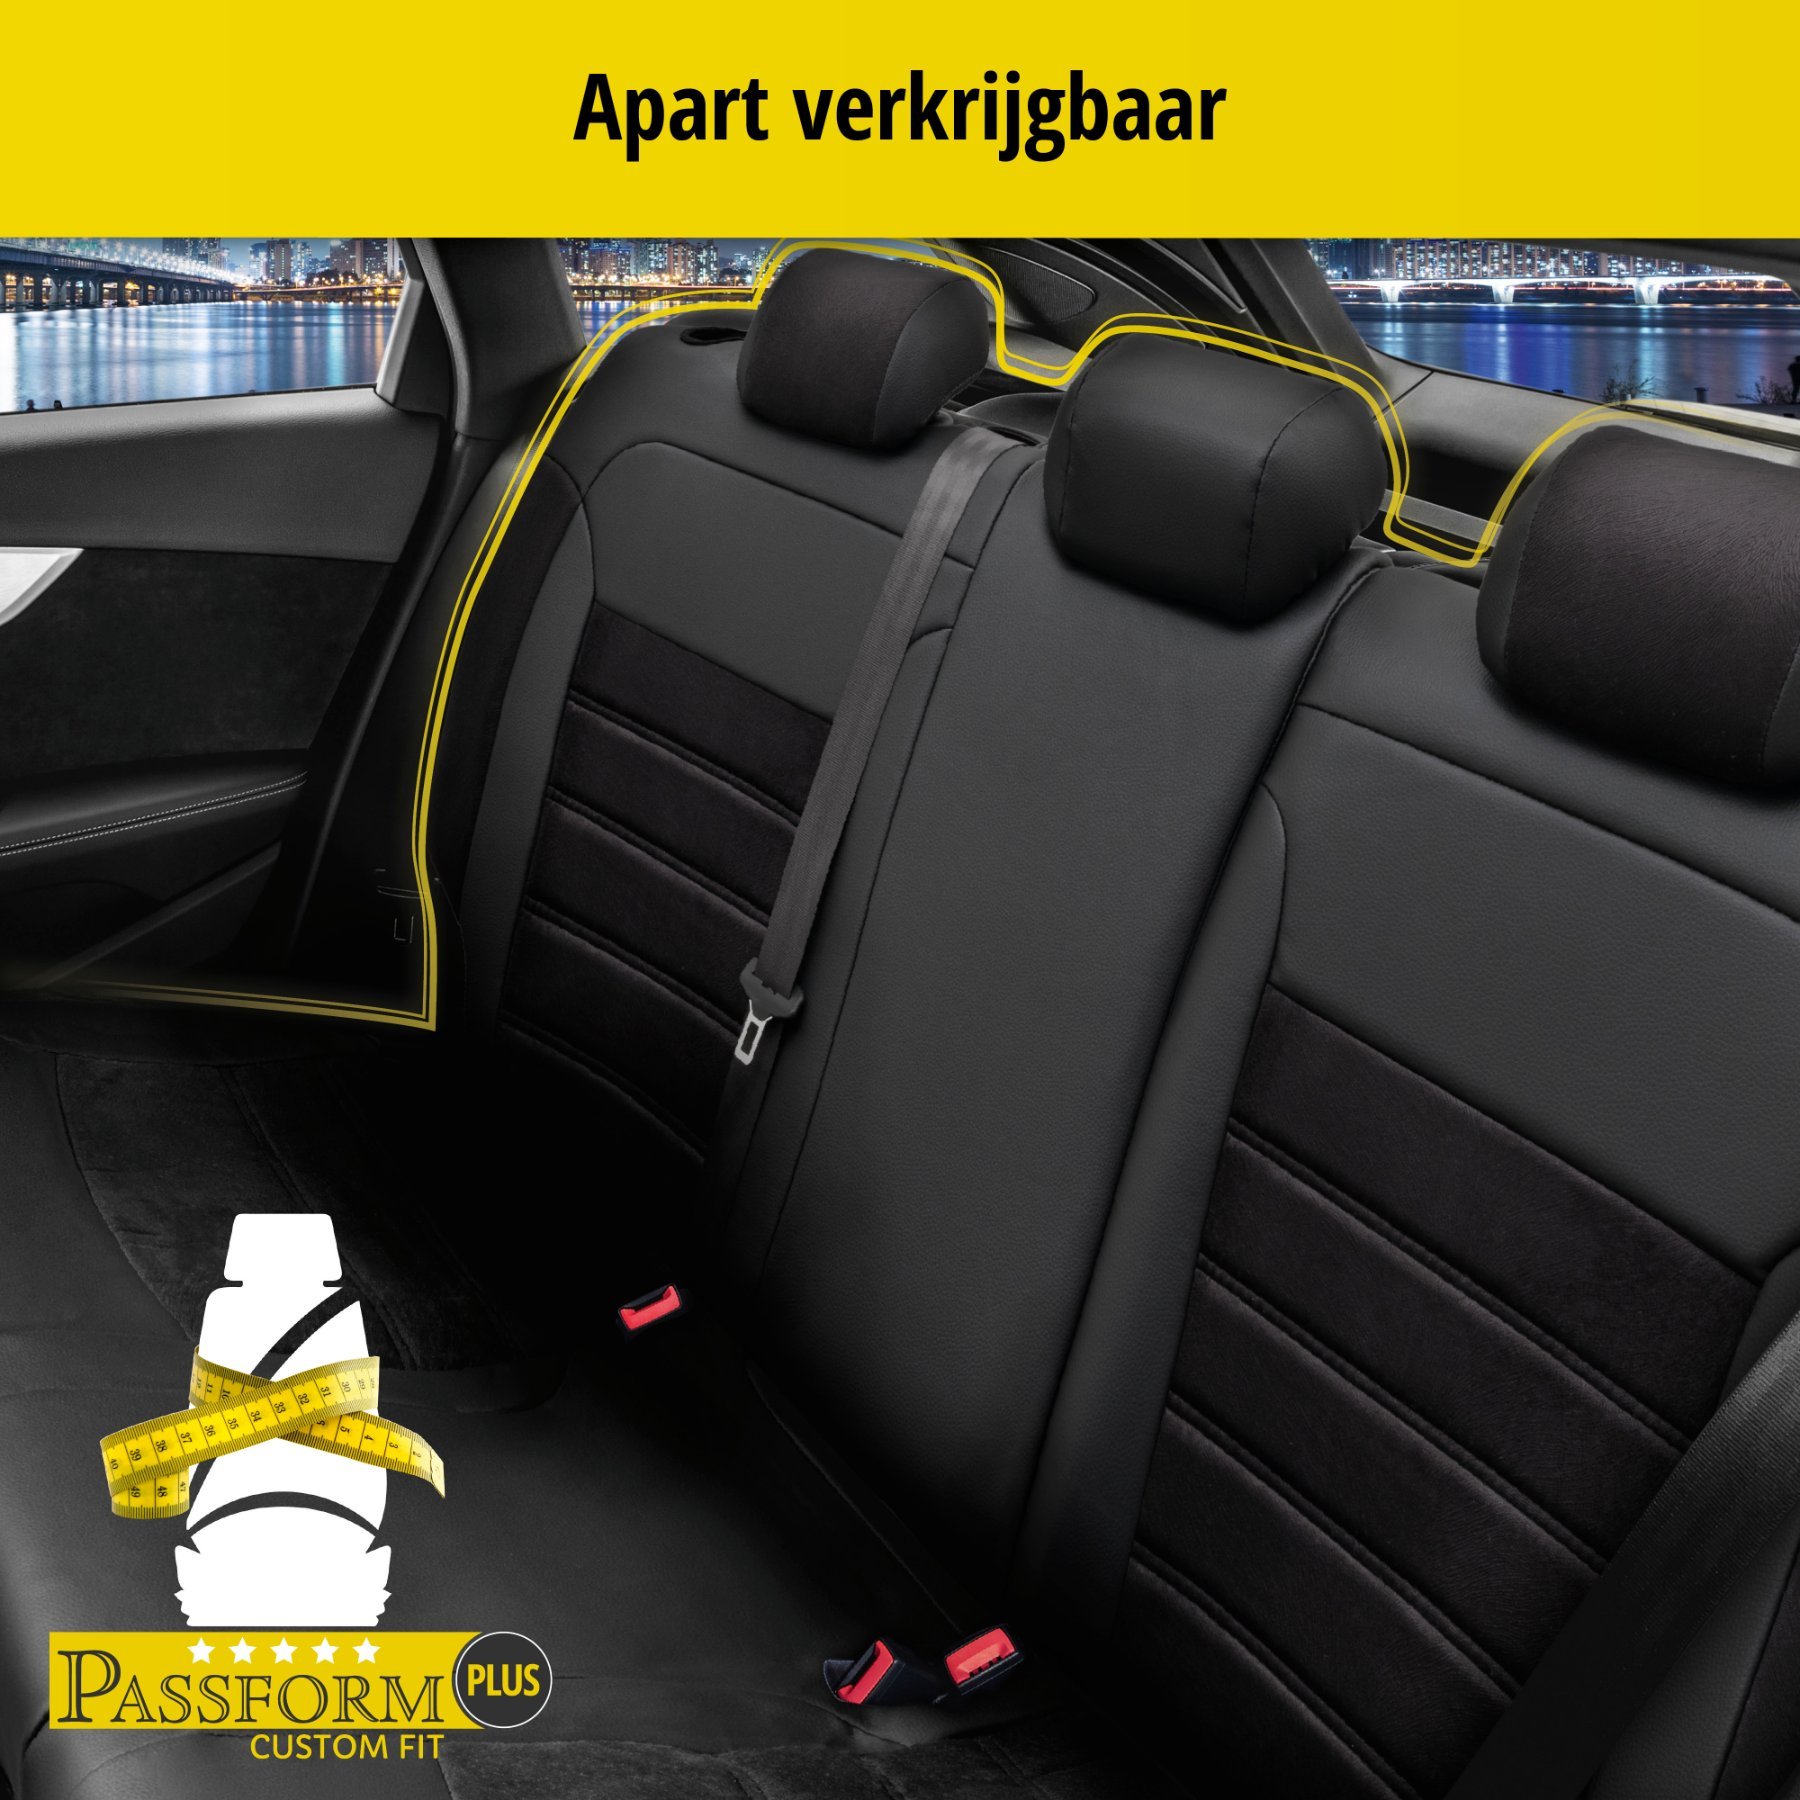 Auto stoelbekleding Bari geschikt voor Audi Q3 06/2011 - 10/2018, 2 enkele zetelhoezen voor standard zetels